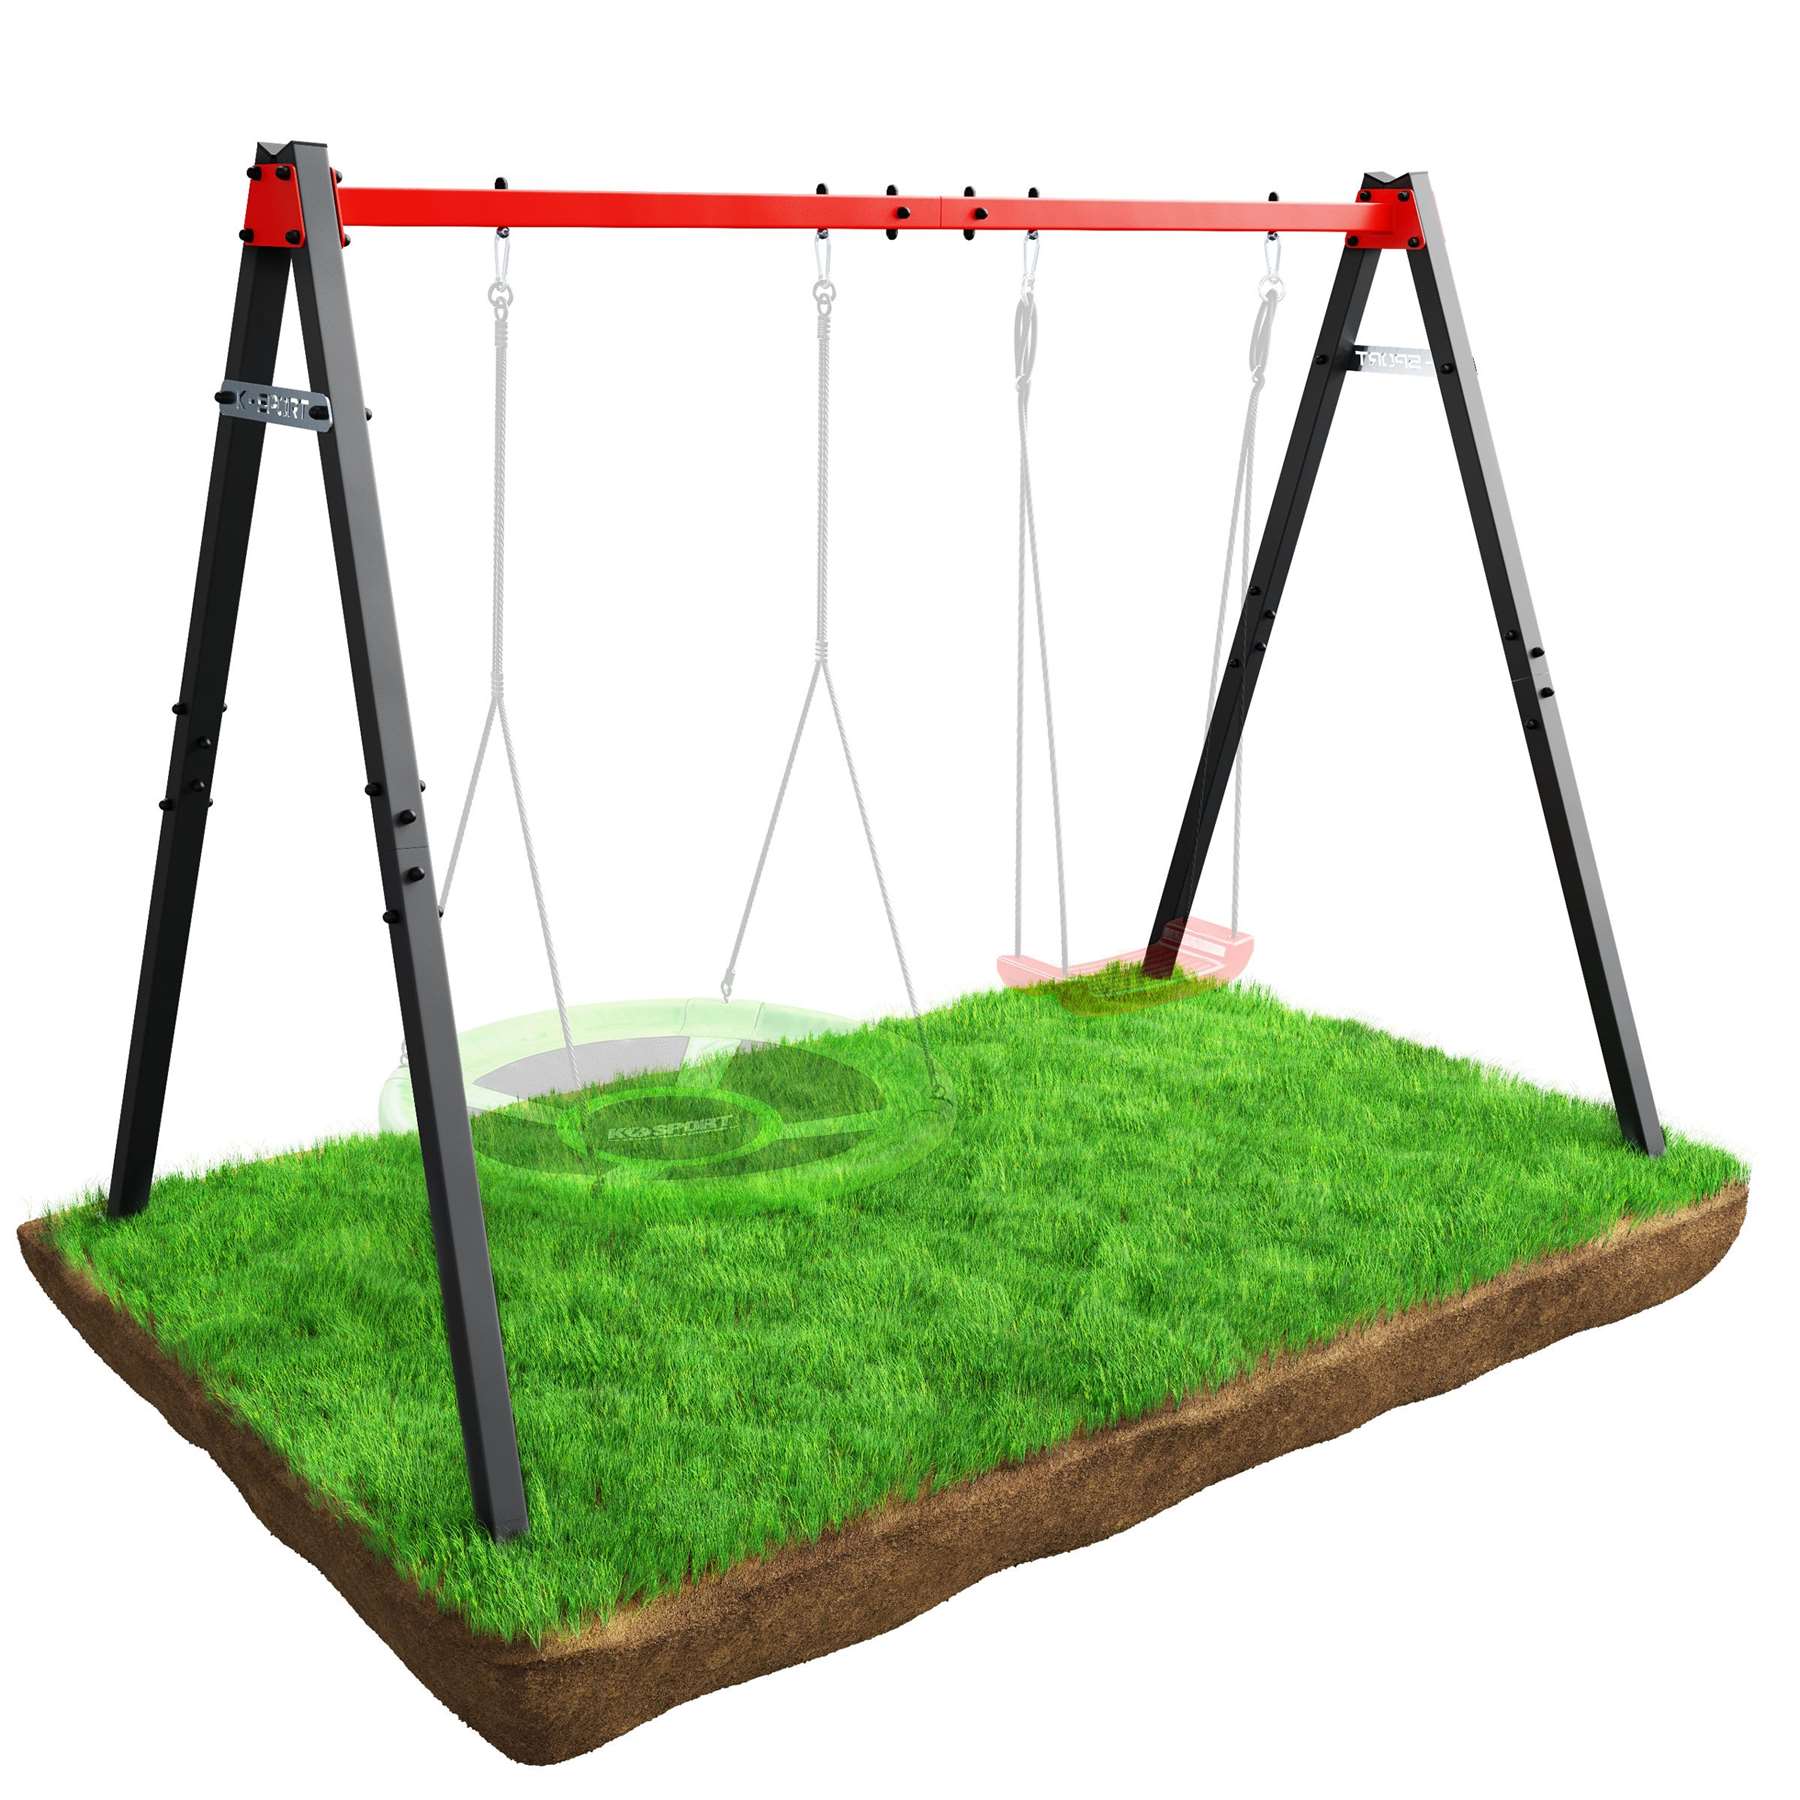 Double Children's Swing Frame For Garden - K-Sport UK